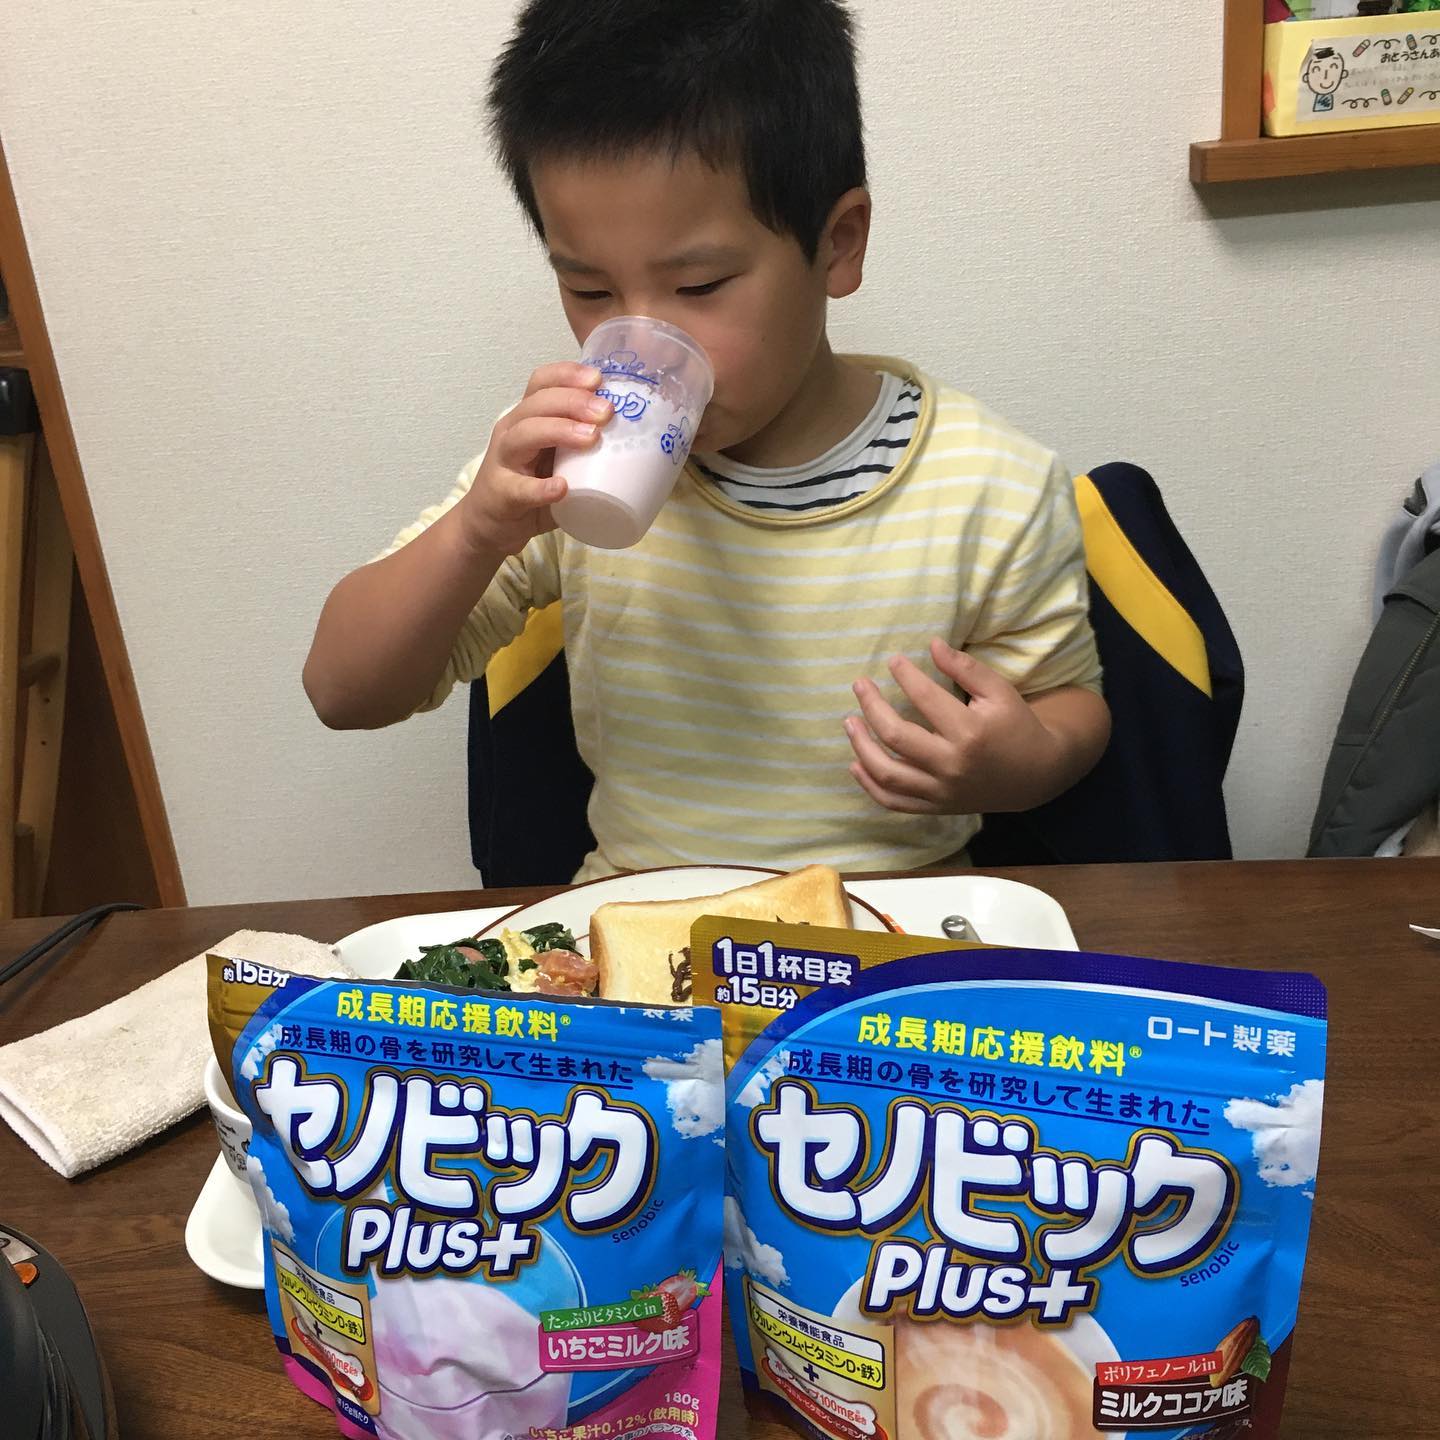 口コミ投稿：#ペルテス病 の我が子にとって、骨を強化できる商品はかなり魅力的です‼️‼️毎朝一杯…